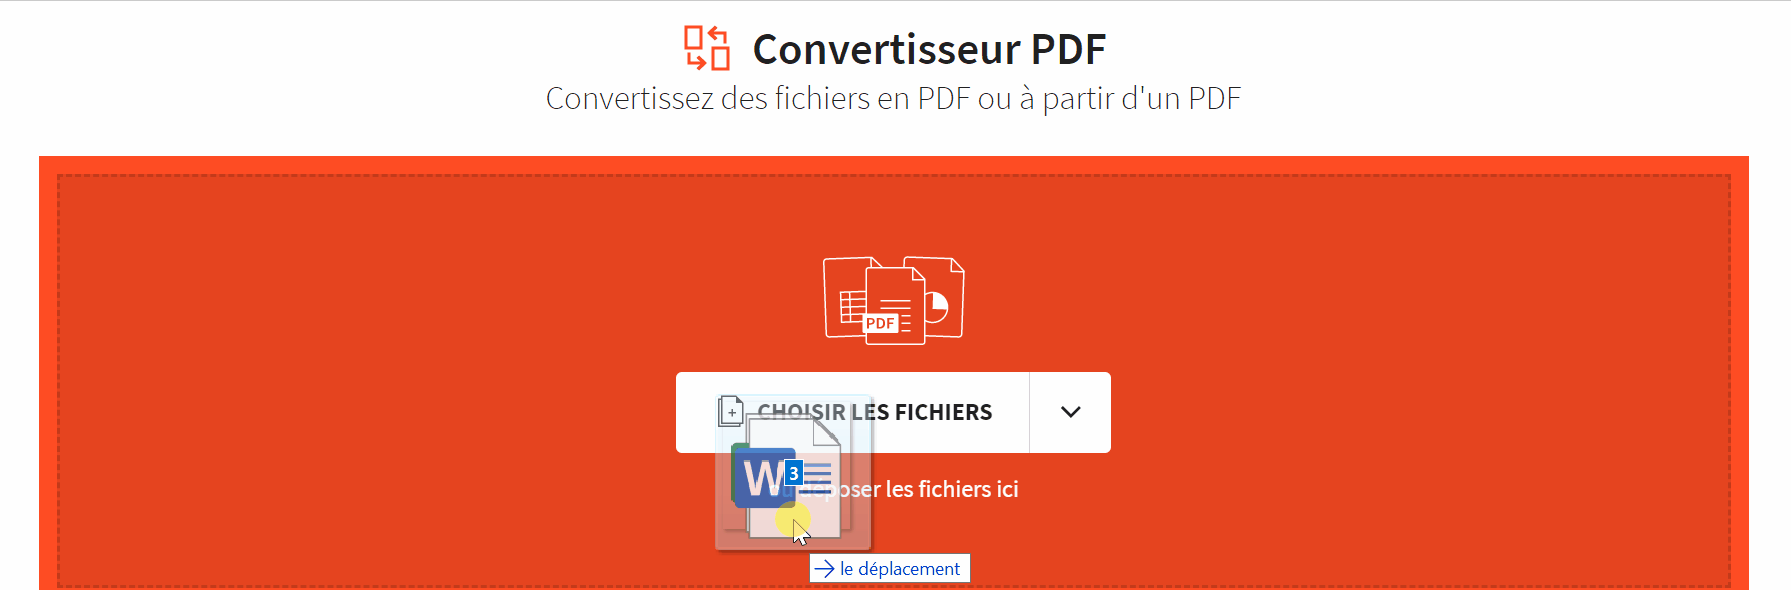 2018-11-29 - Comment utiliser Microsoft Print to PDF avec Word, PPT et Excel - outil Convertisseur PDF sur Smallpdf -jpg, excel et word